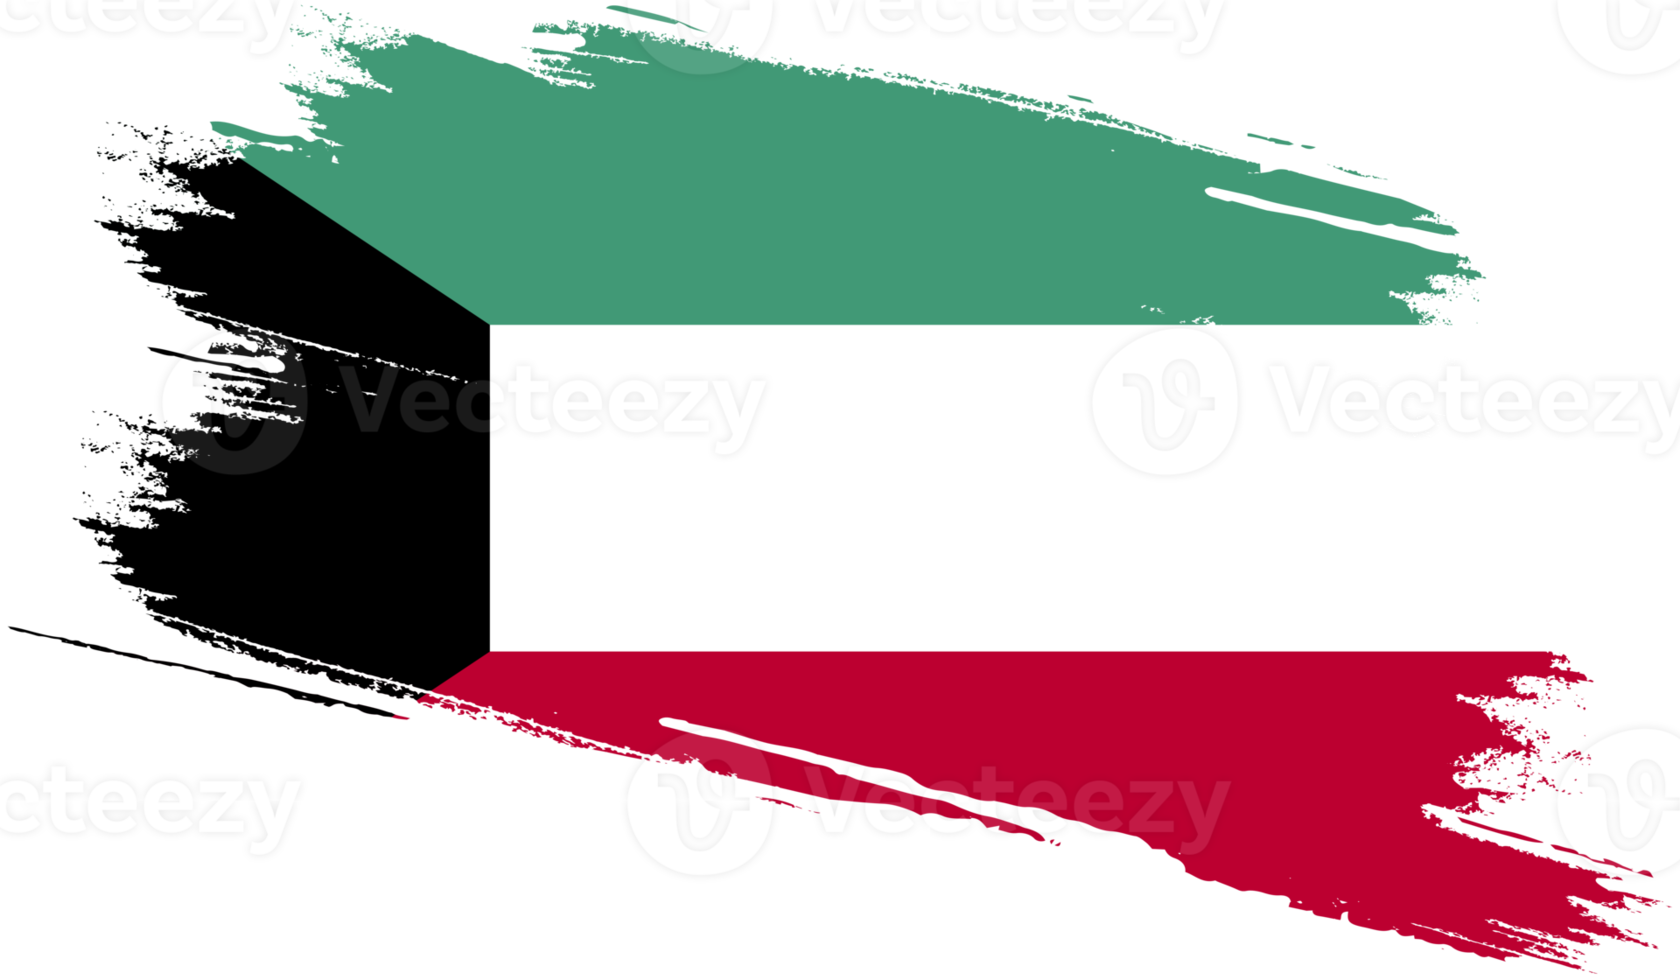 Kuwait bandiera con grunge struttura png